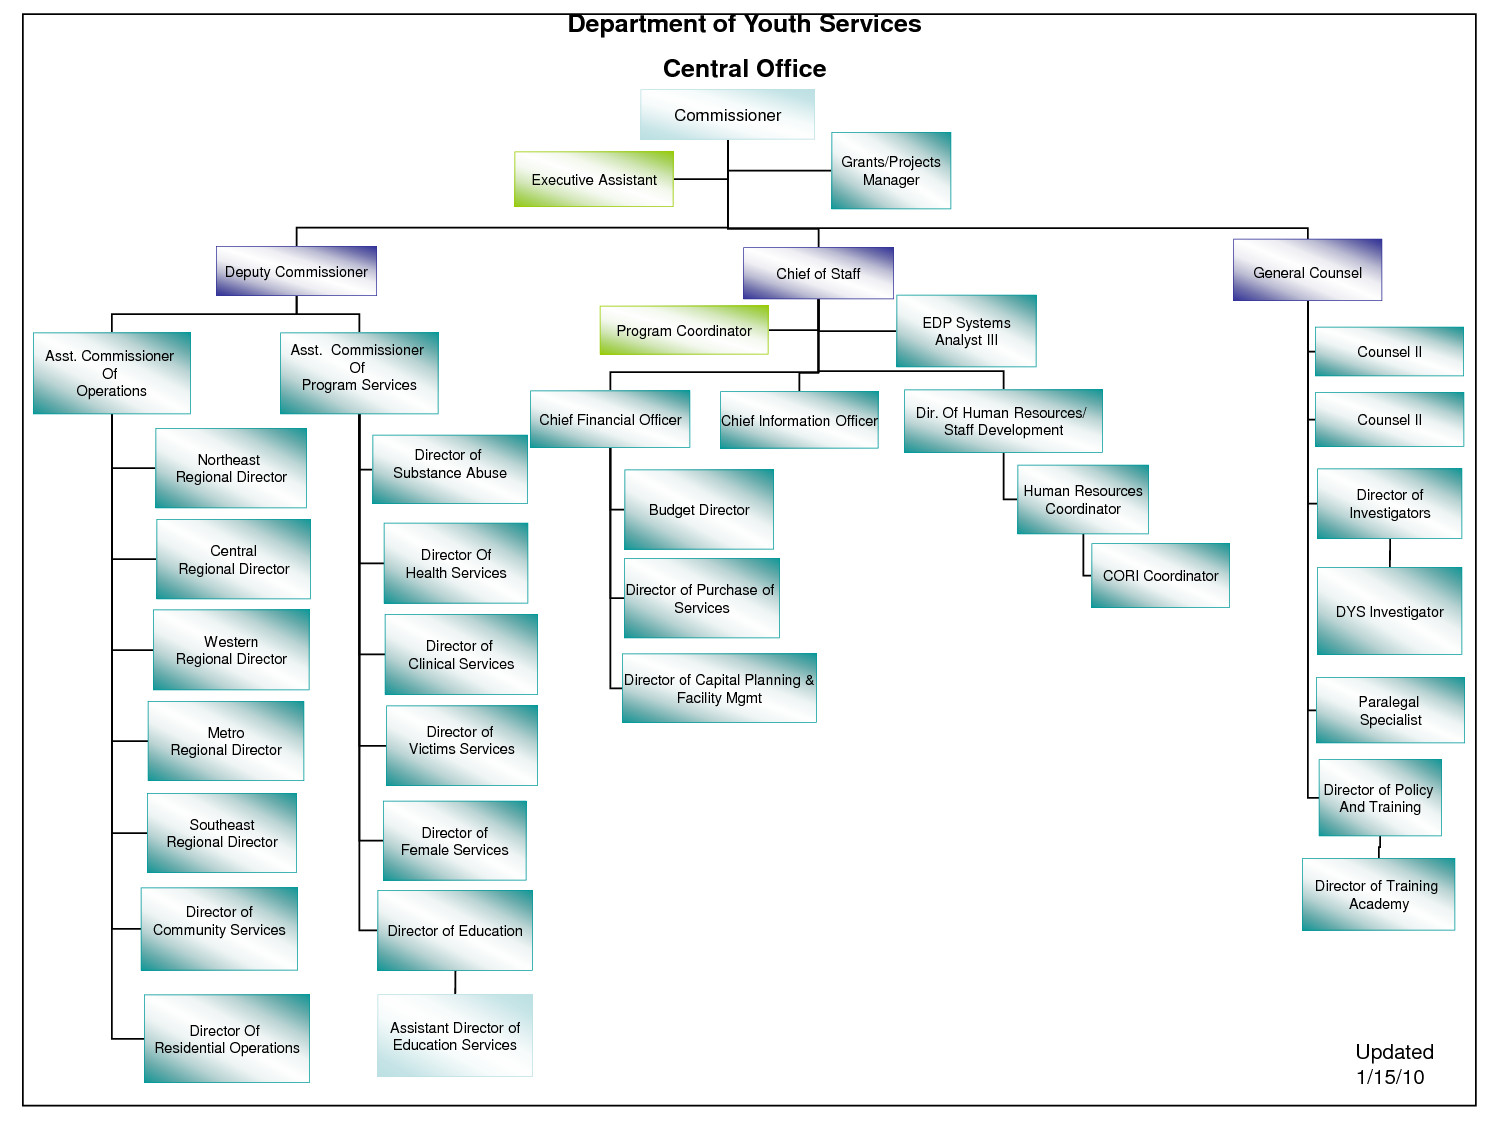 Microsoft Organizational Chart Template